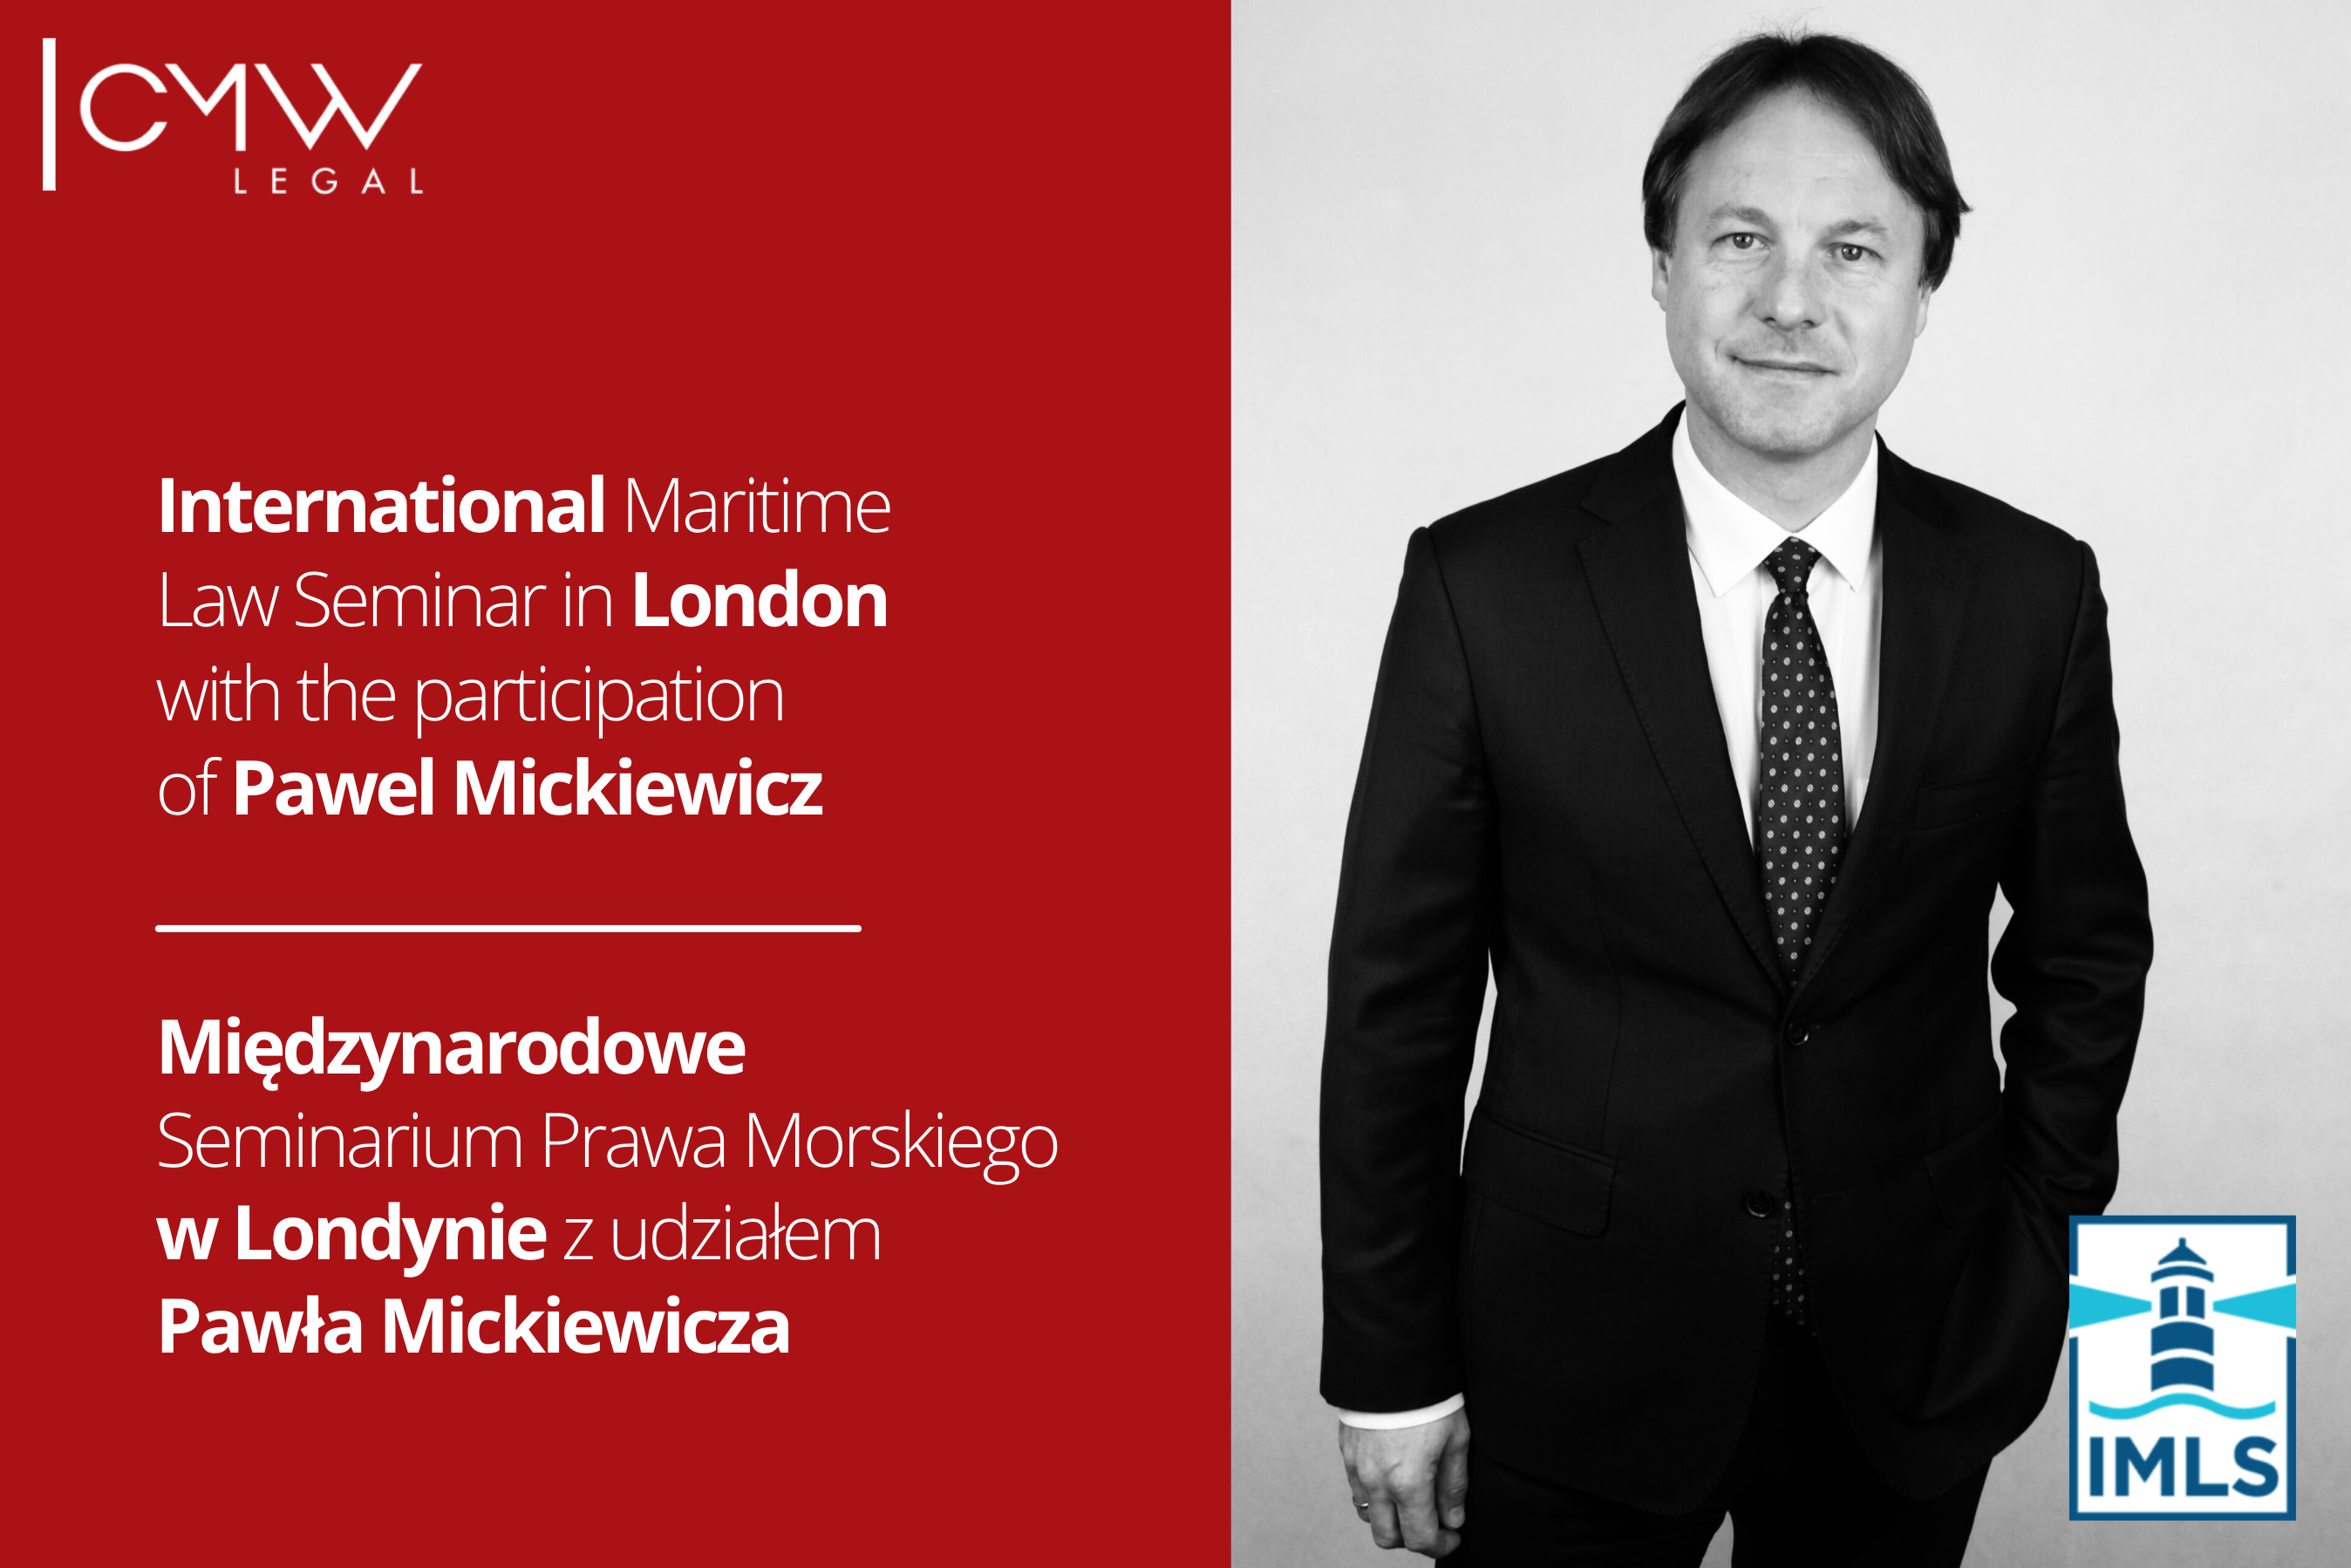  IMLS z udziałem mec. Pawła Mickiewicza  – już w tym tygodniu w Londynie, 6 października 2022 r.